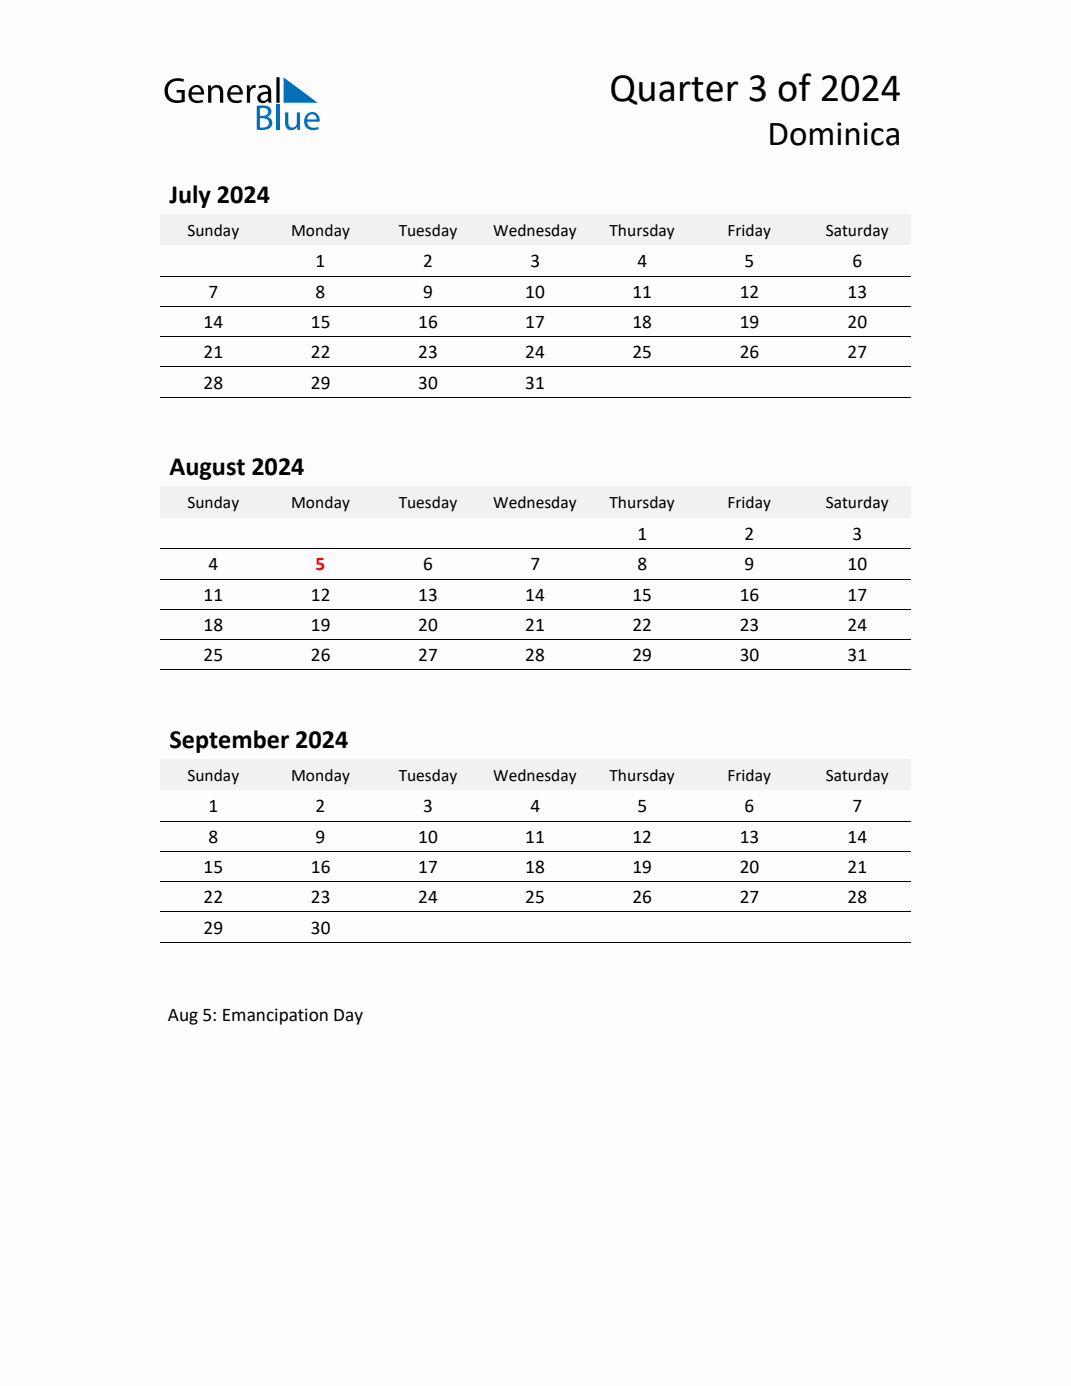 Q3 2024 Quarterly Calendar with Dominica Holidays